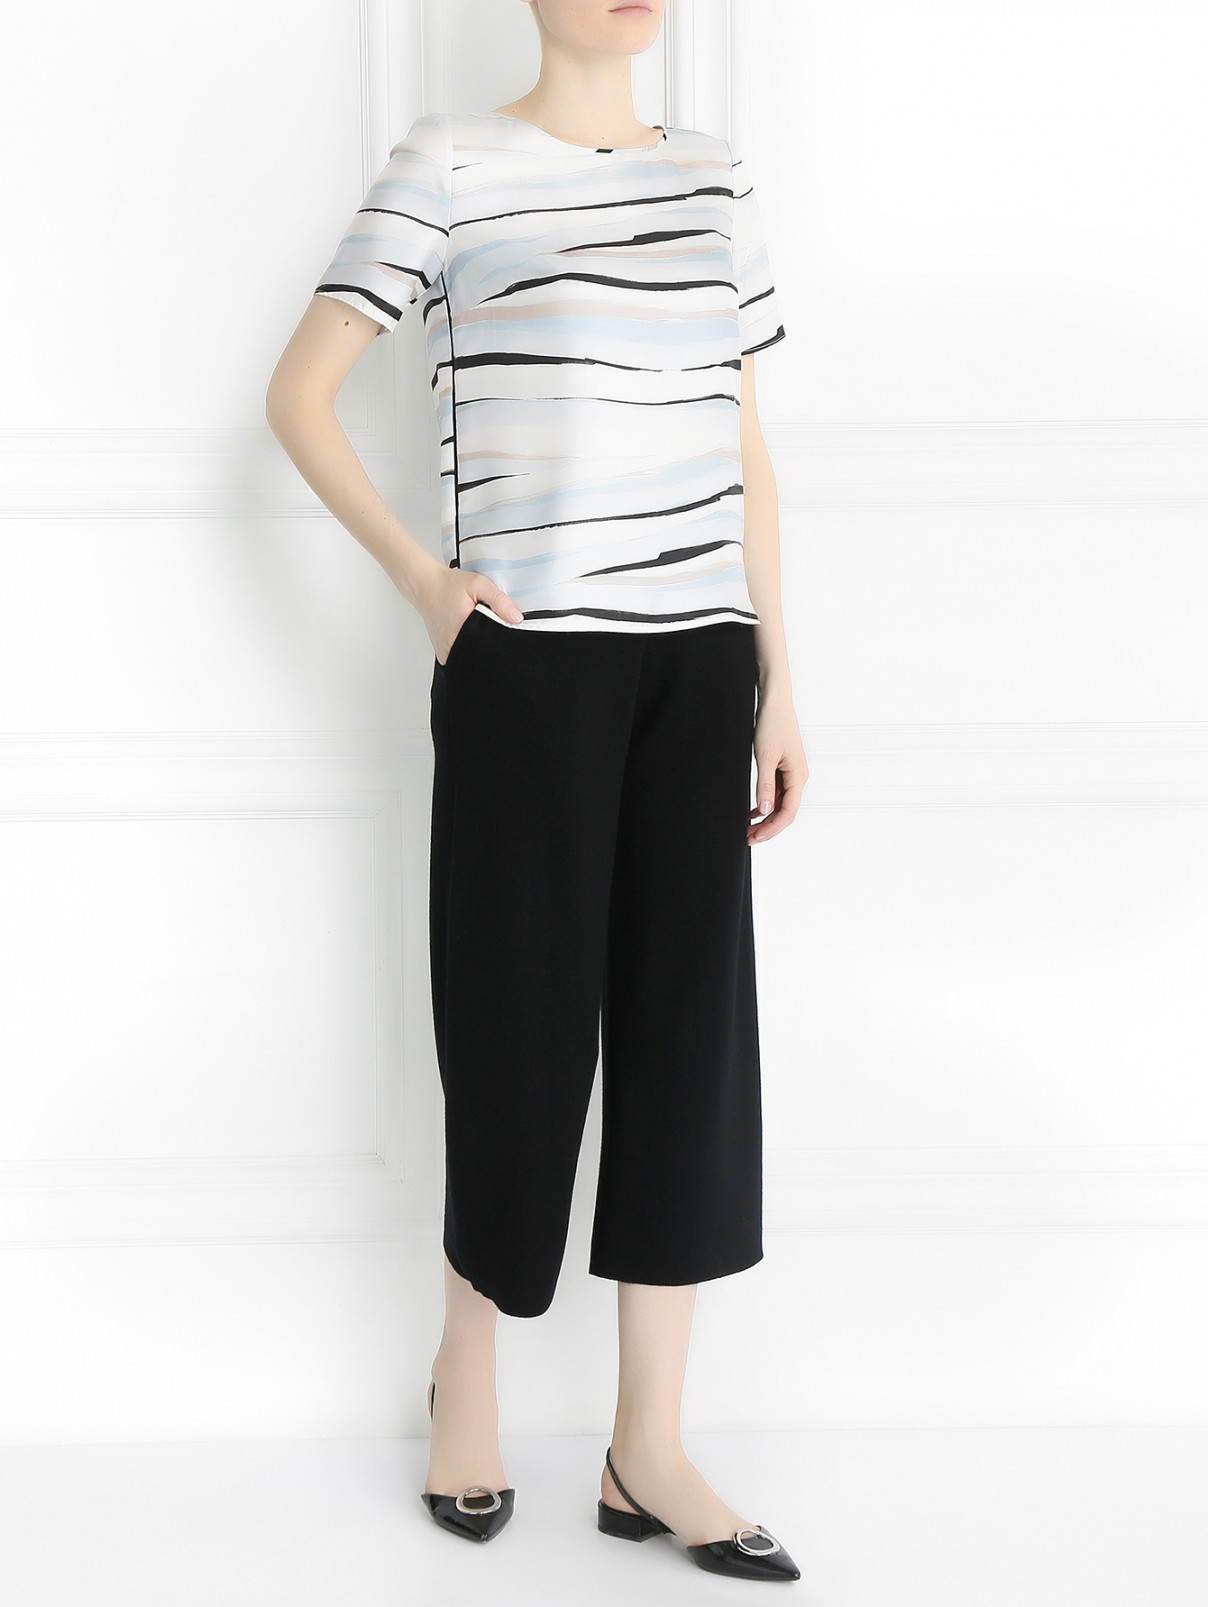 Трикотажные брюки из шерсти на резинке Allude  –  Модель Общий вид  – Цвет:  Черный